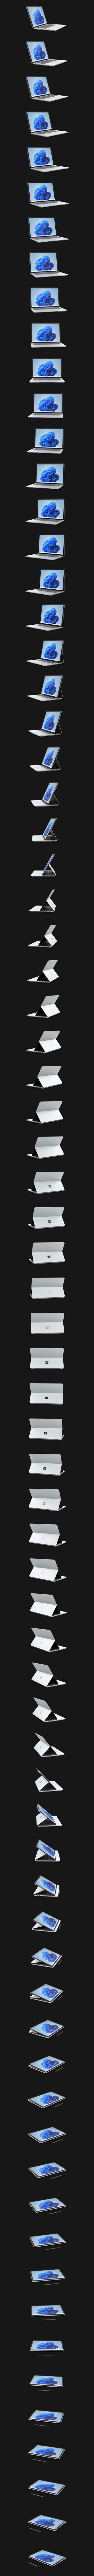 Surface Laptop Studio roterer 360 grader.